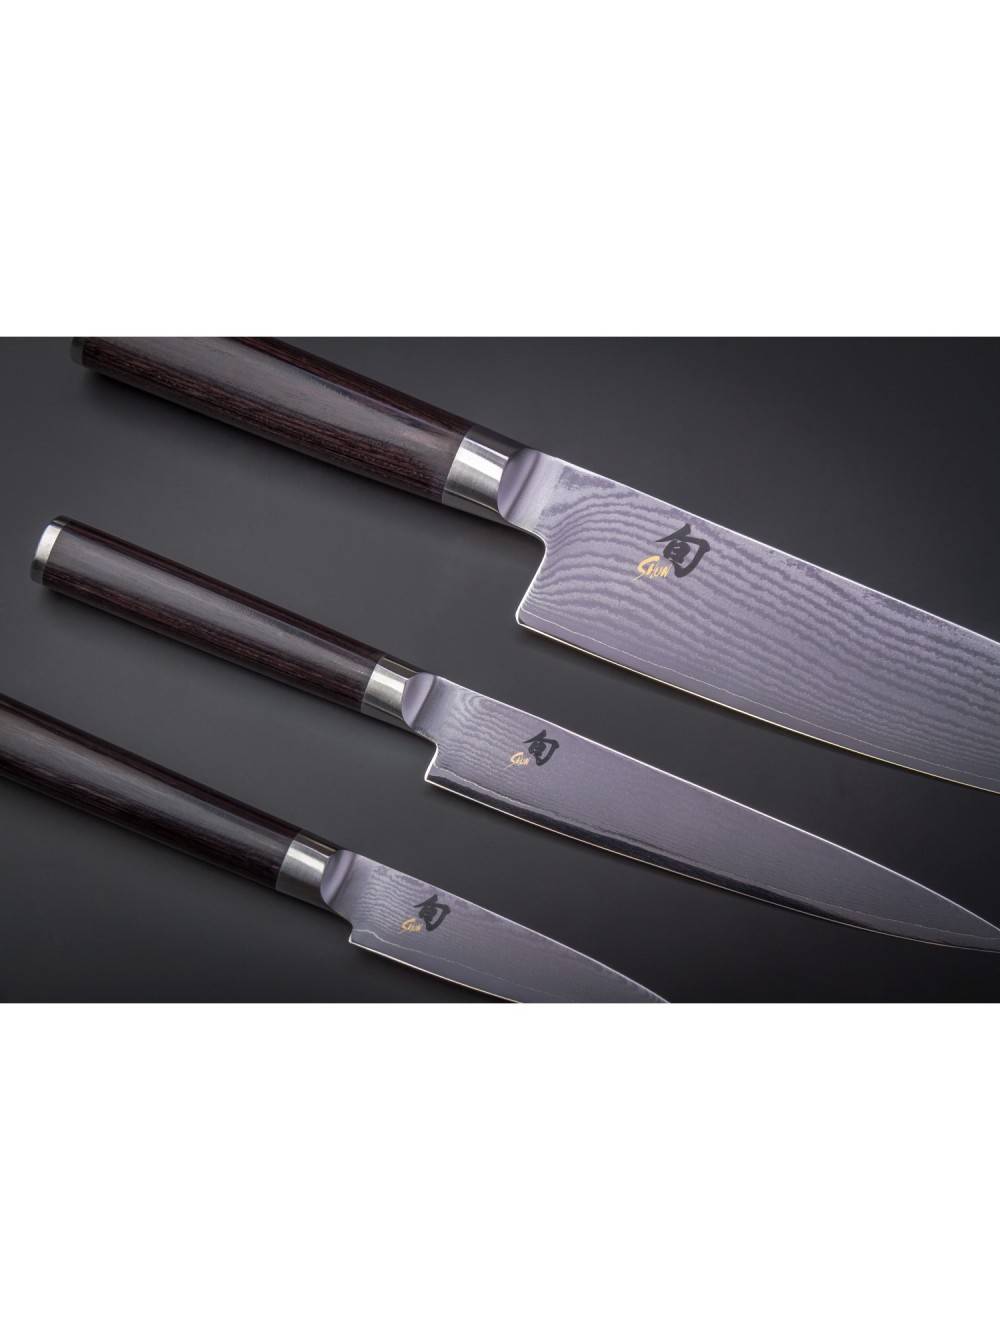 Ножи - всё о ножах: японские ножи